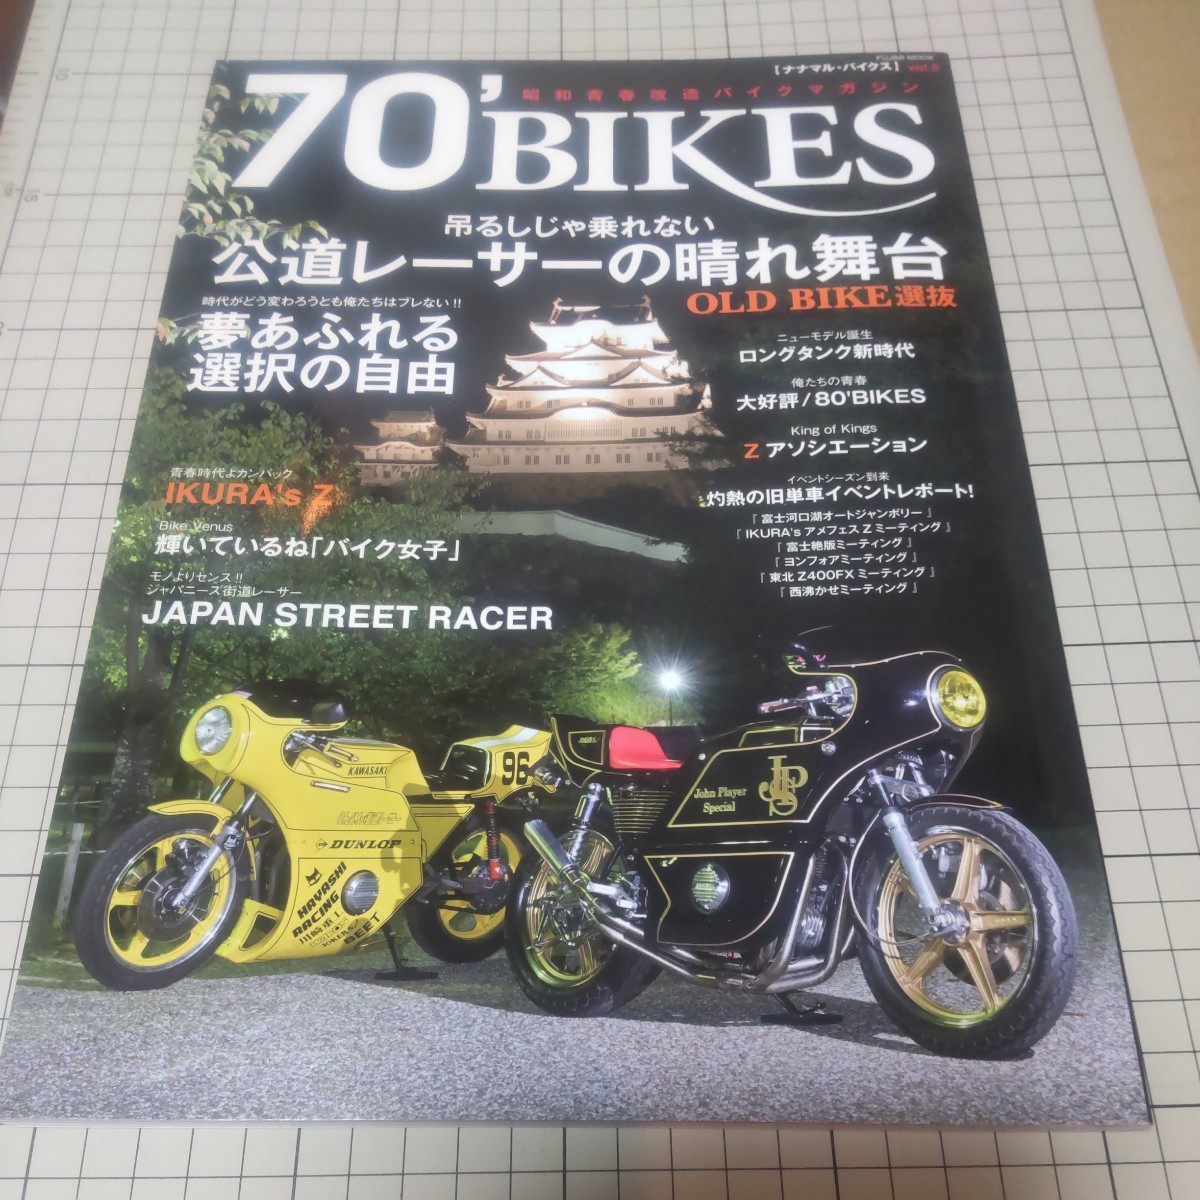 中古 古本 ナナマルバイクス 70bikes Vol.5 2019年発行 旧車會 暴走族 カフェレーサー _画像1